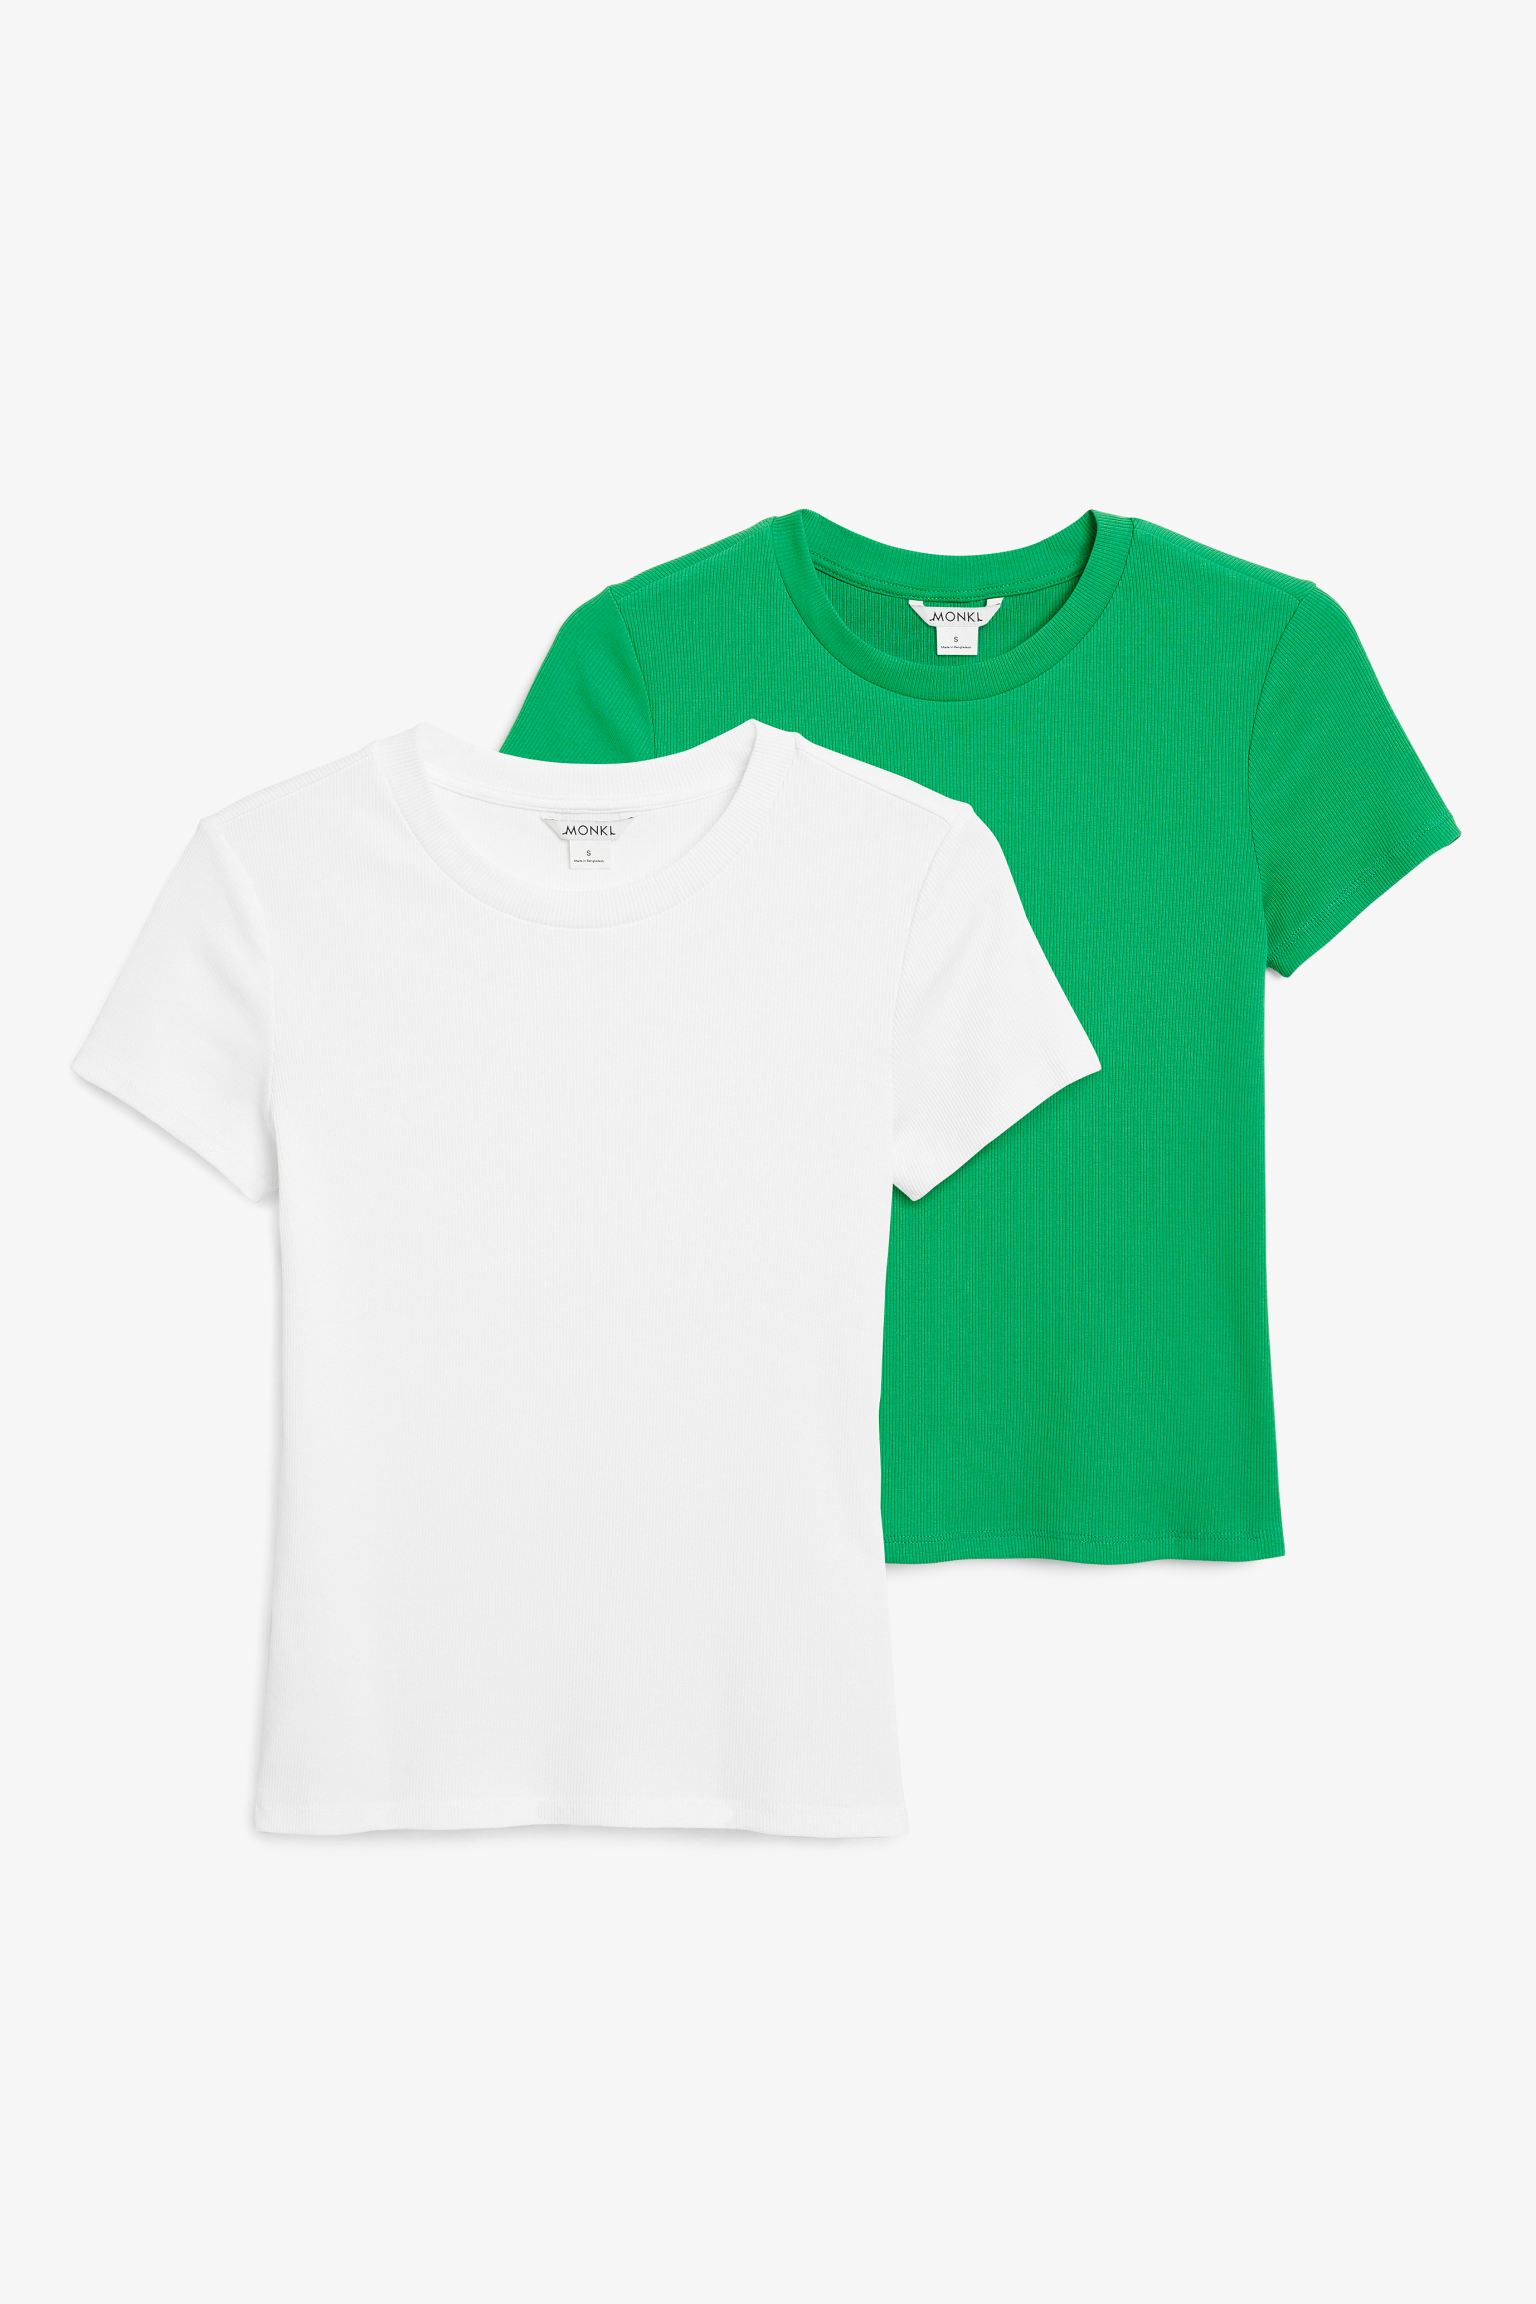 Комплект футболок женских Monki 1174161002 белых XS (доставка из-за рубежа)